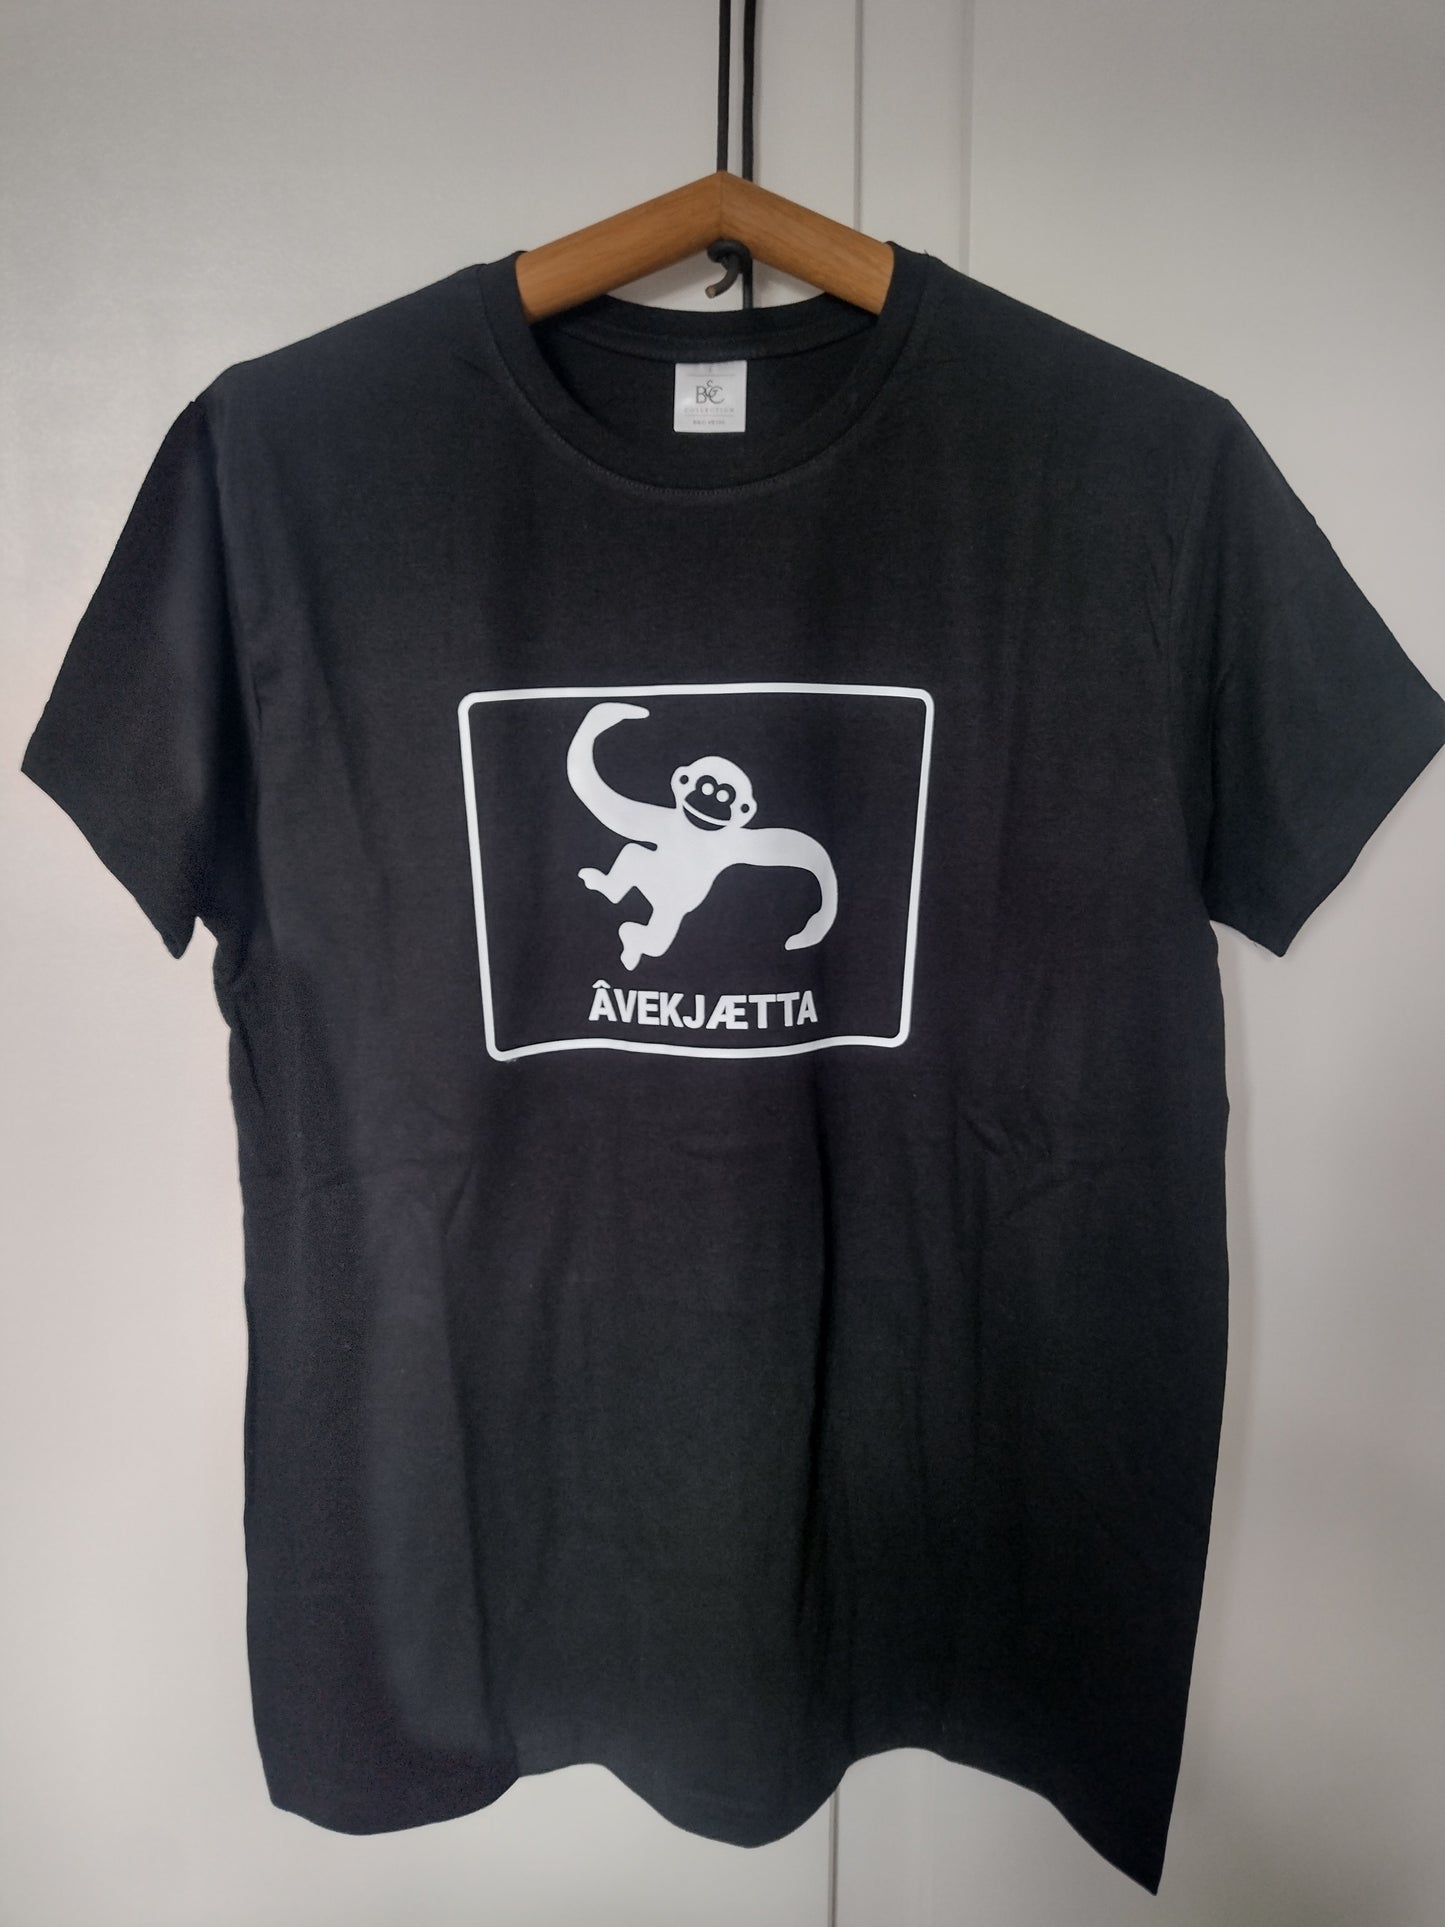 T-shirt: Âvekjætta (unisex)